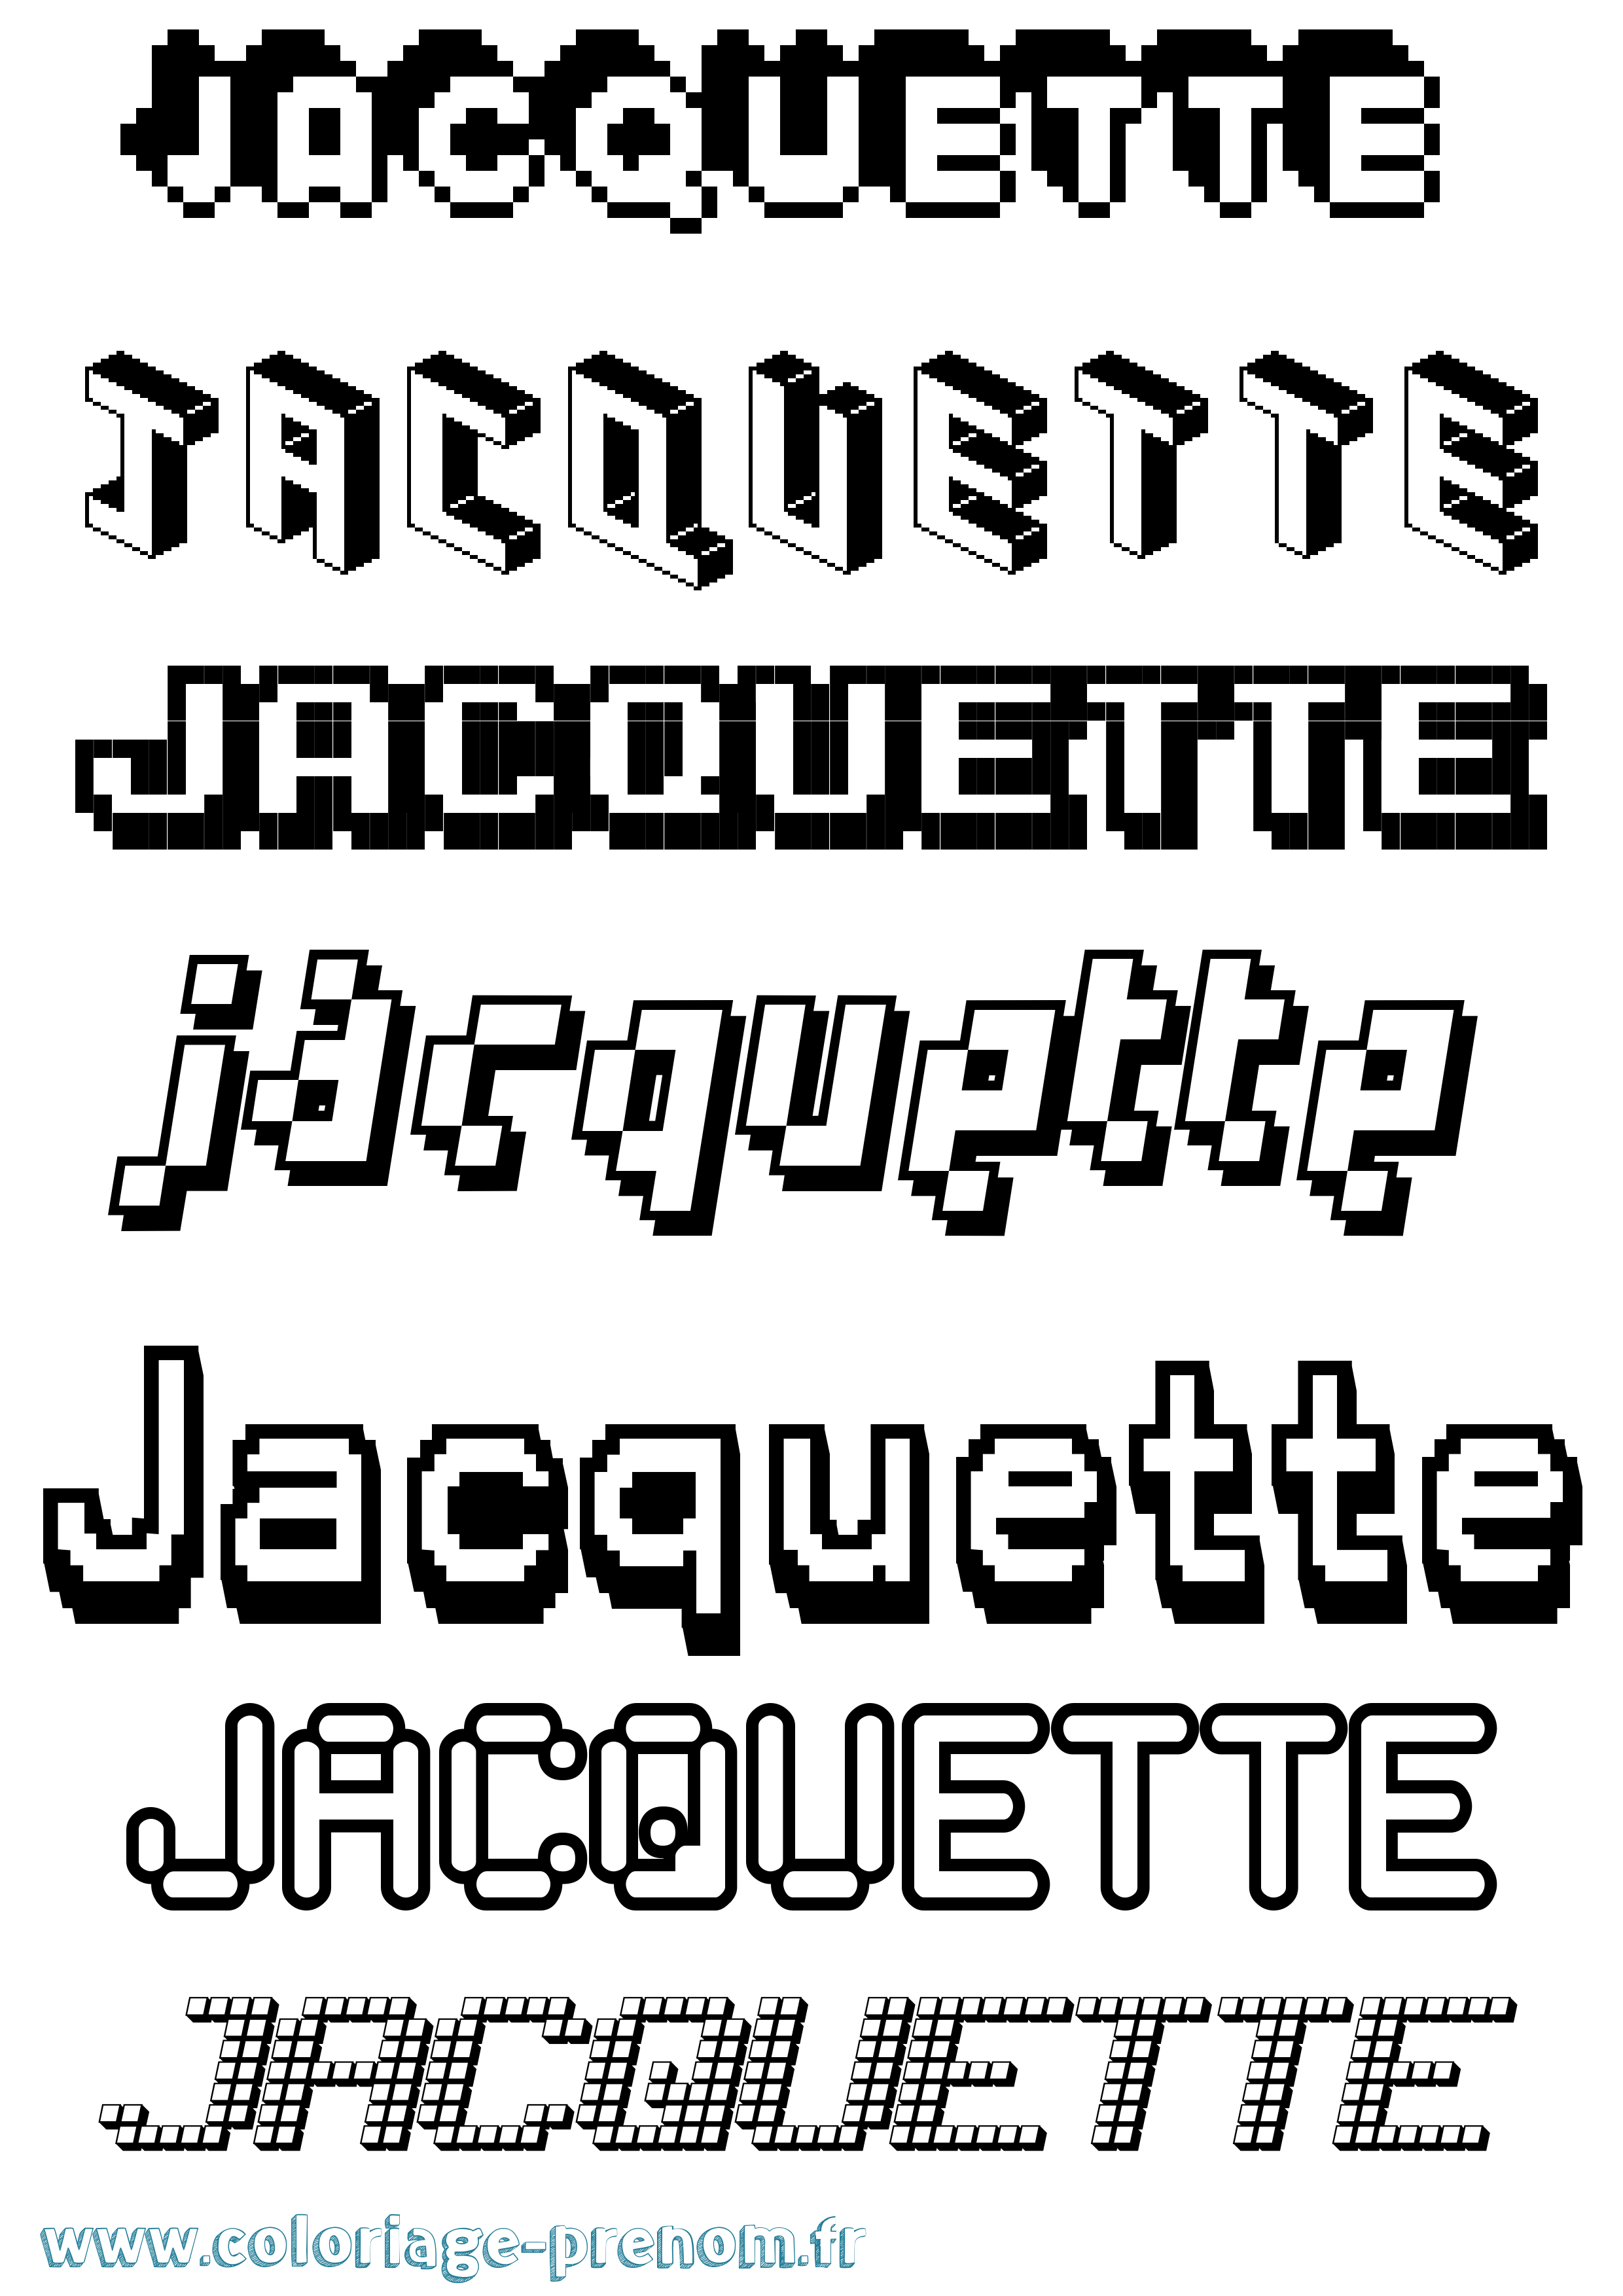 Coloriage prénom Jacquette Pixel